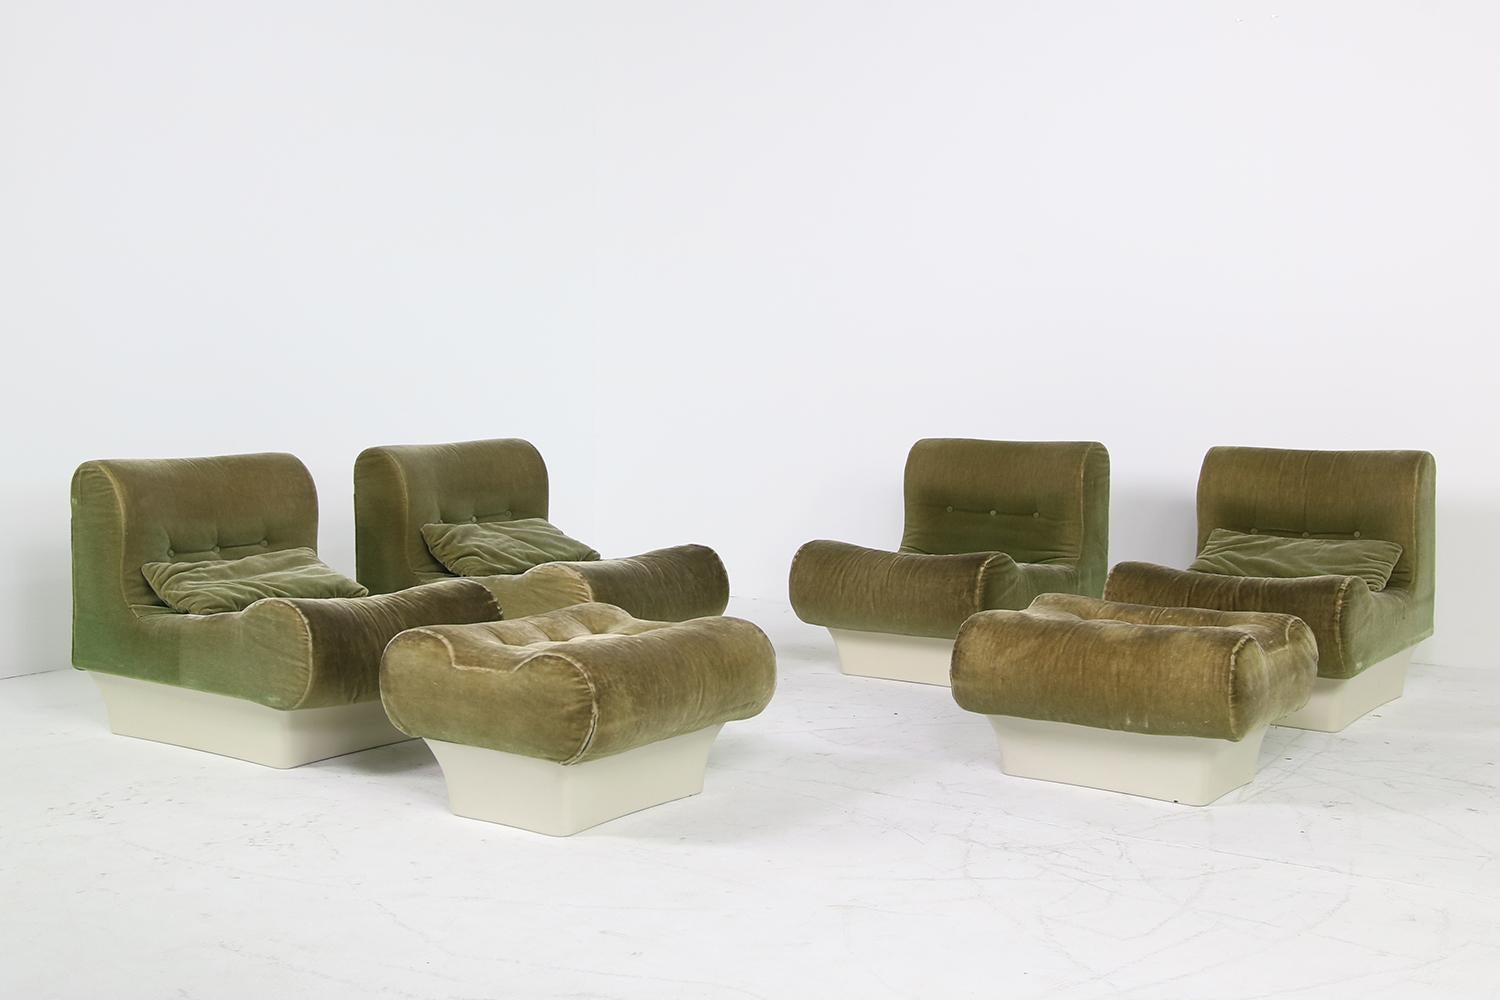 German Vintage 1960s Otto Zapf Modular Sofa & Lounge Chair Living Room Set, Mohair